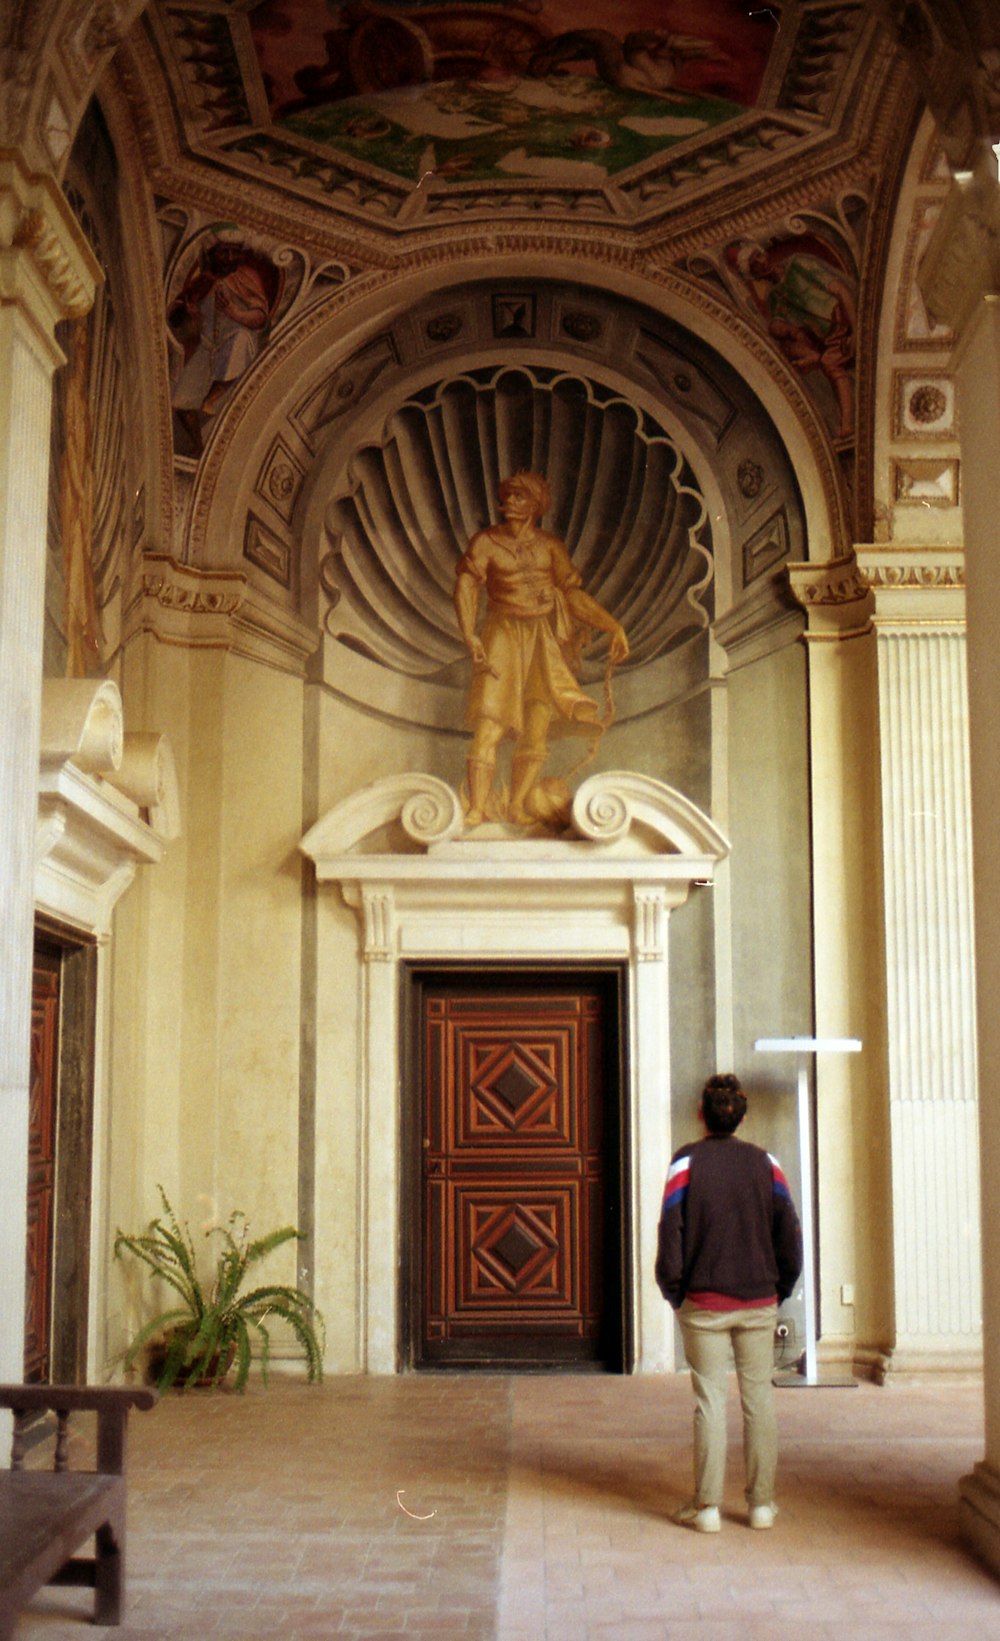 man in black jacket standing in front of brown wooden door